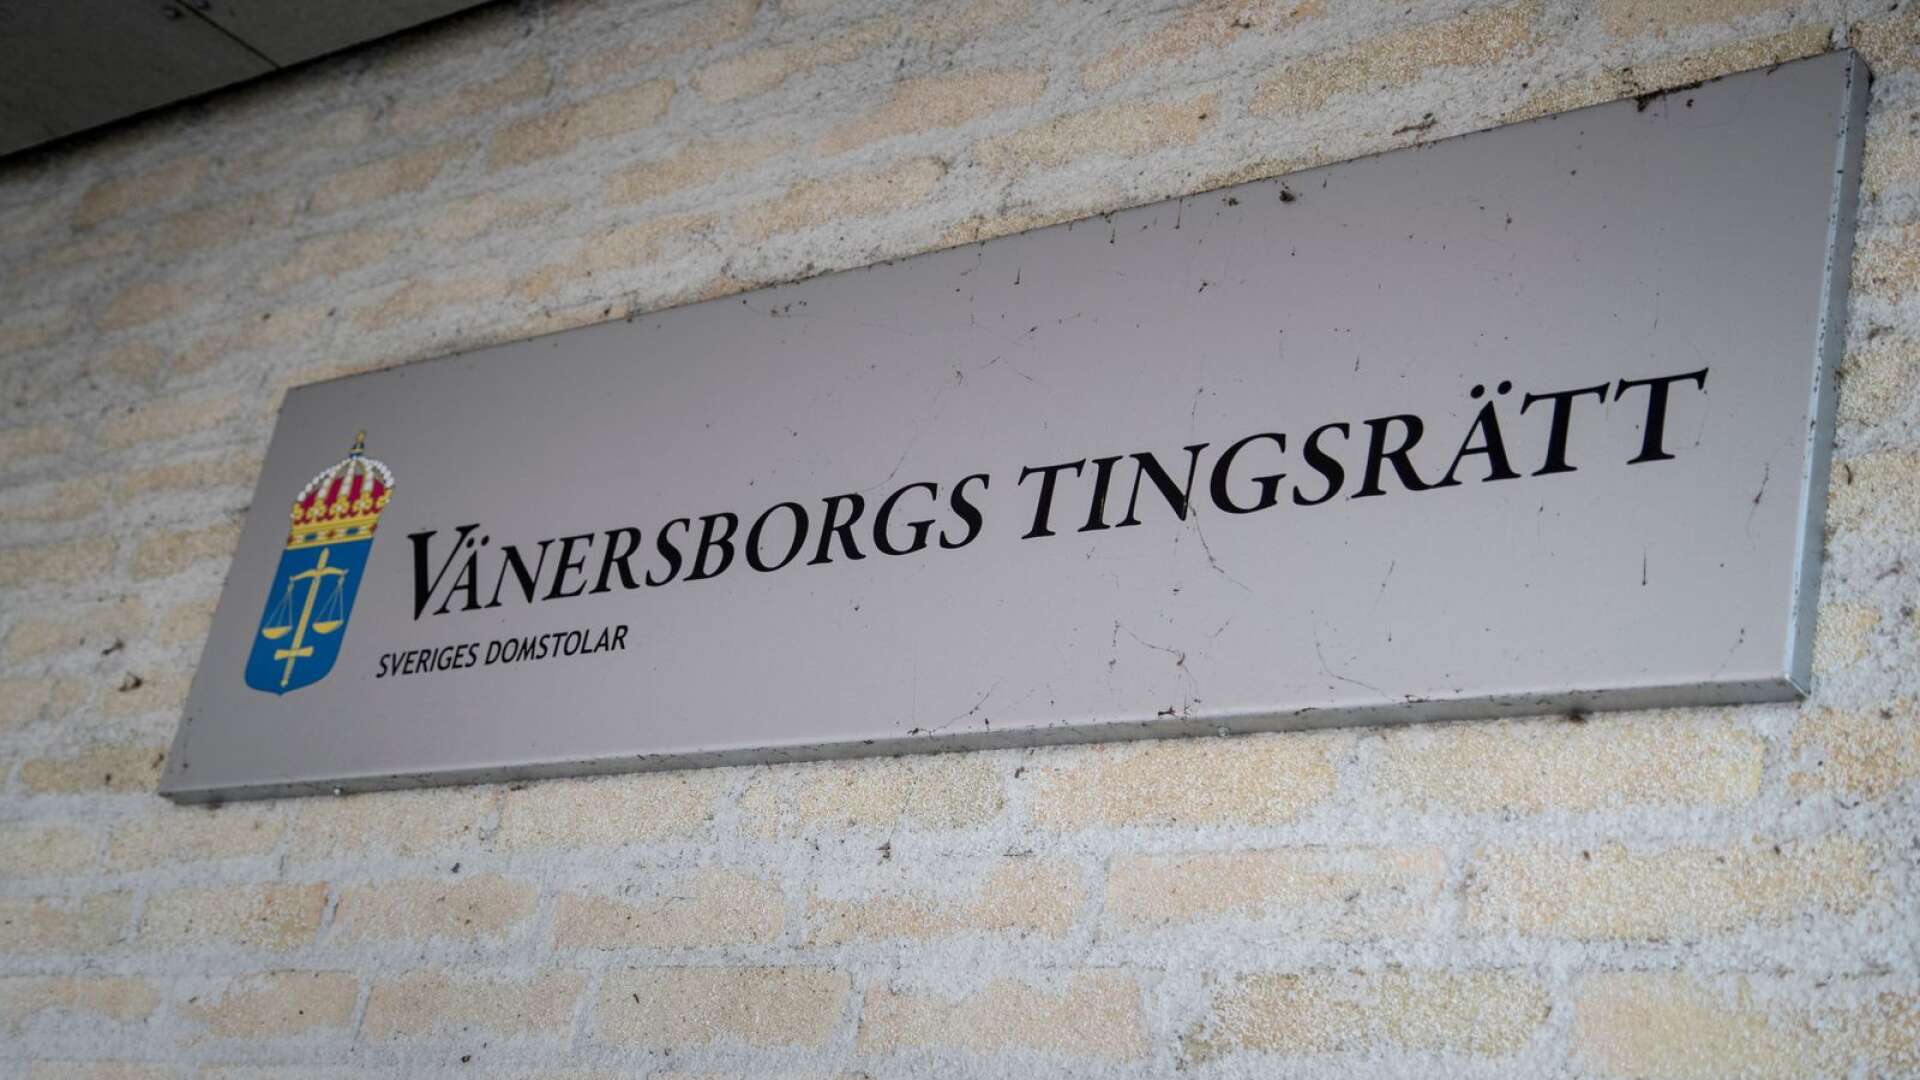 Brottsmisstanken har anmälts till Vänersborgs tingsrätt eftersom Säfflebons företag drevs i Åmål.